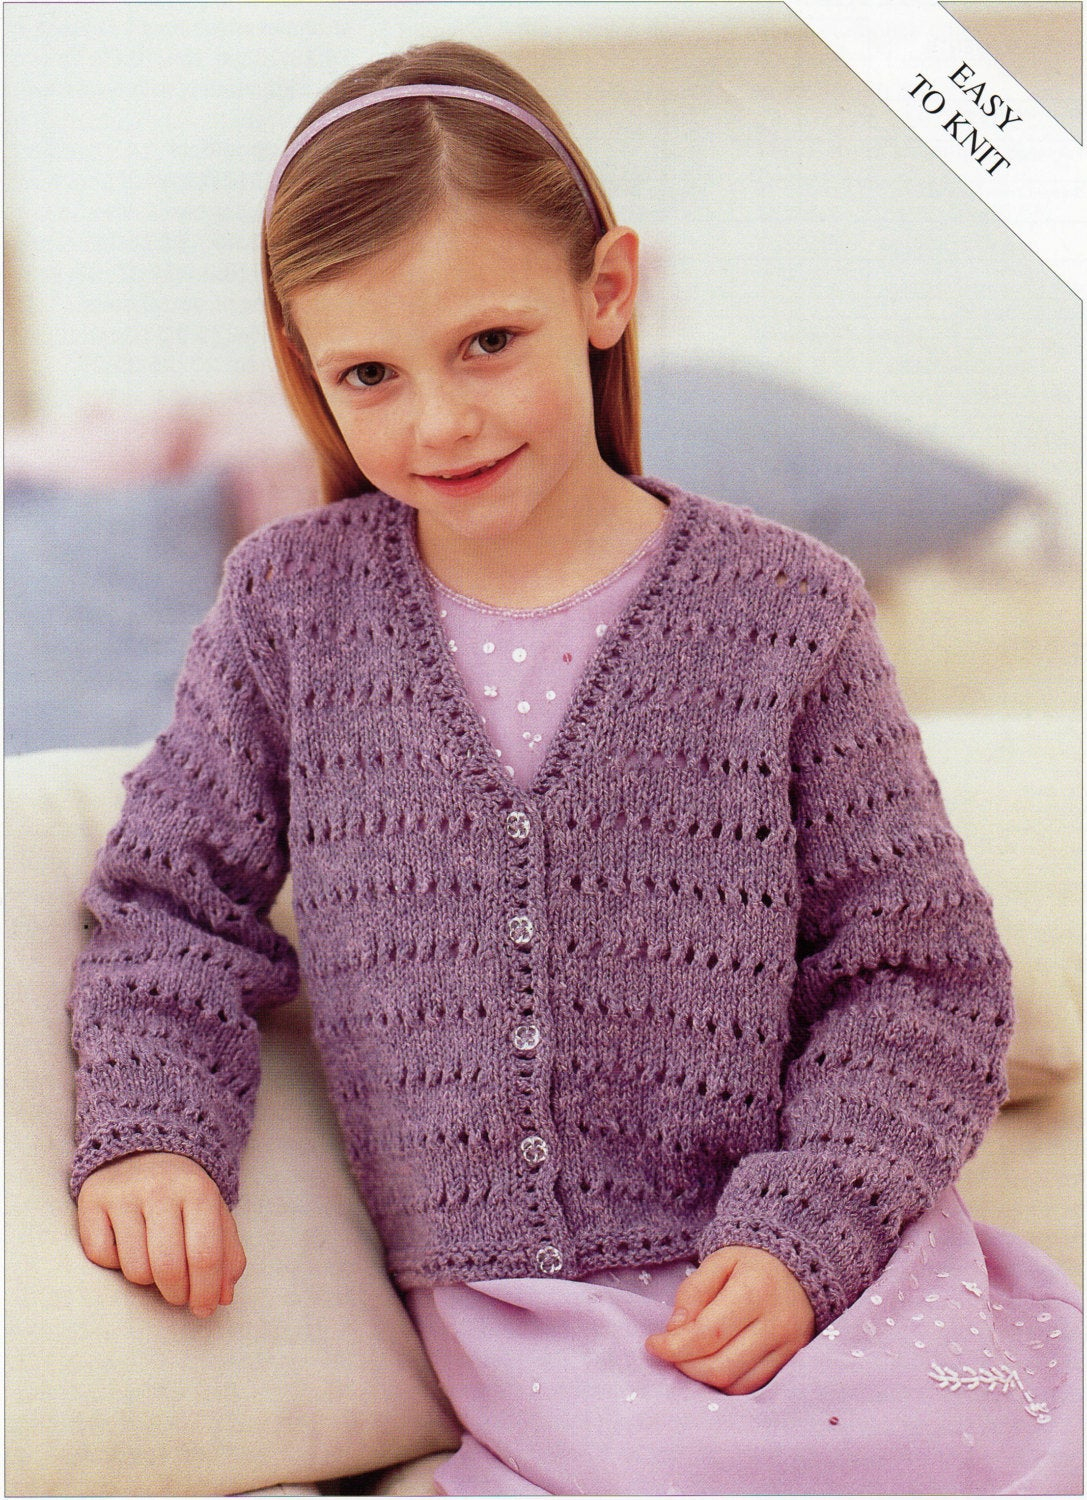 Free Knitting Patterns For Boys Free Knitting Patterns For Girls Cardigans Londonmetalumniml Visit